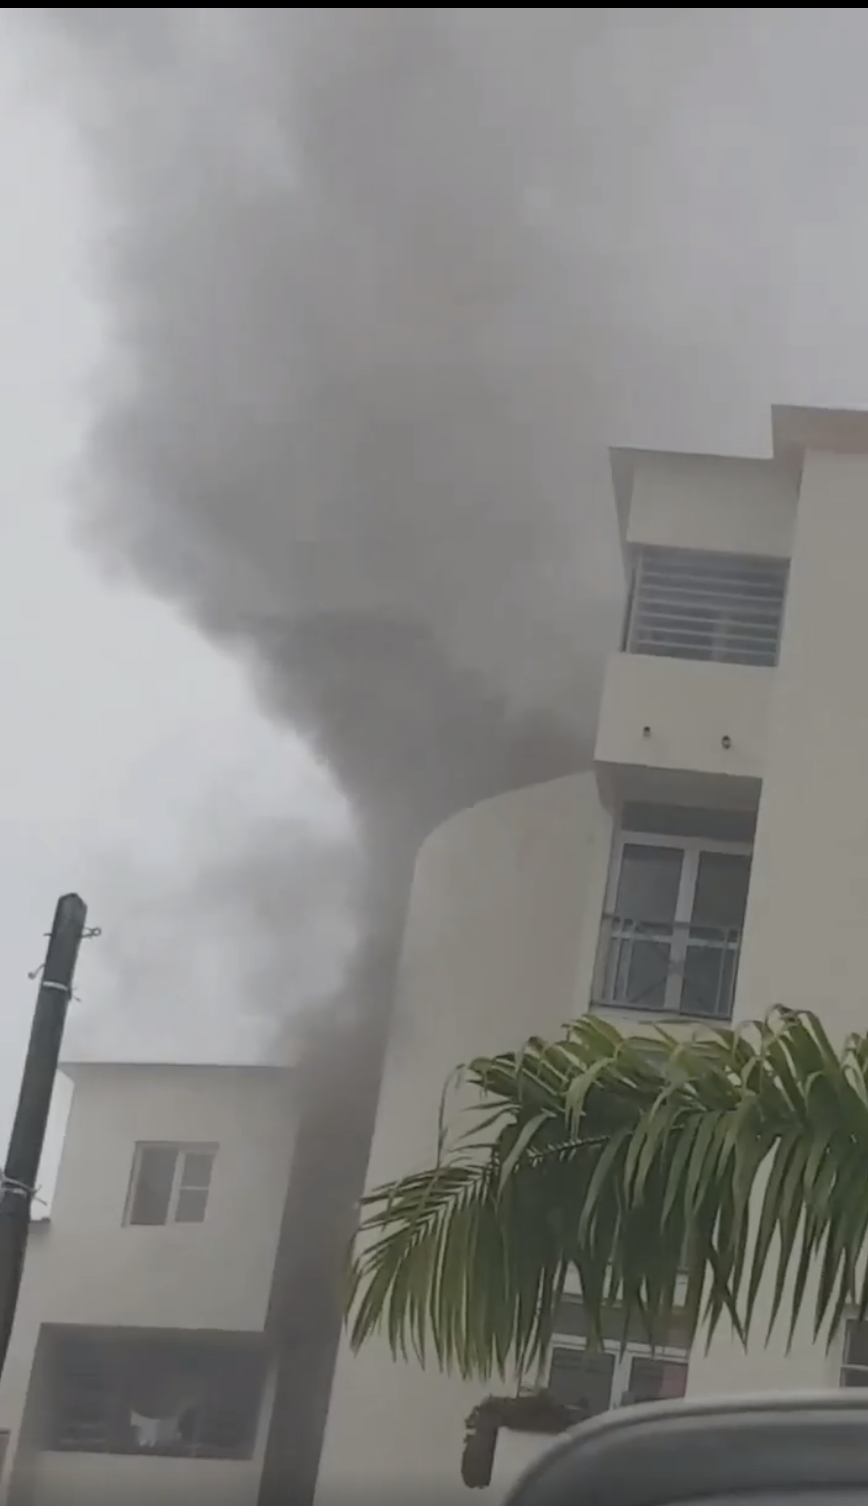 St-André: Incendie dans un appartement